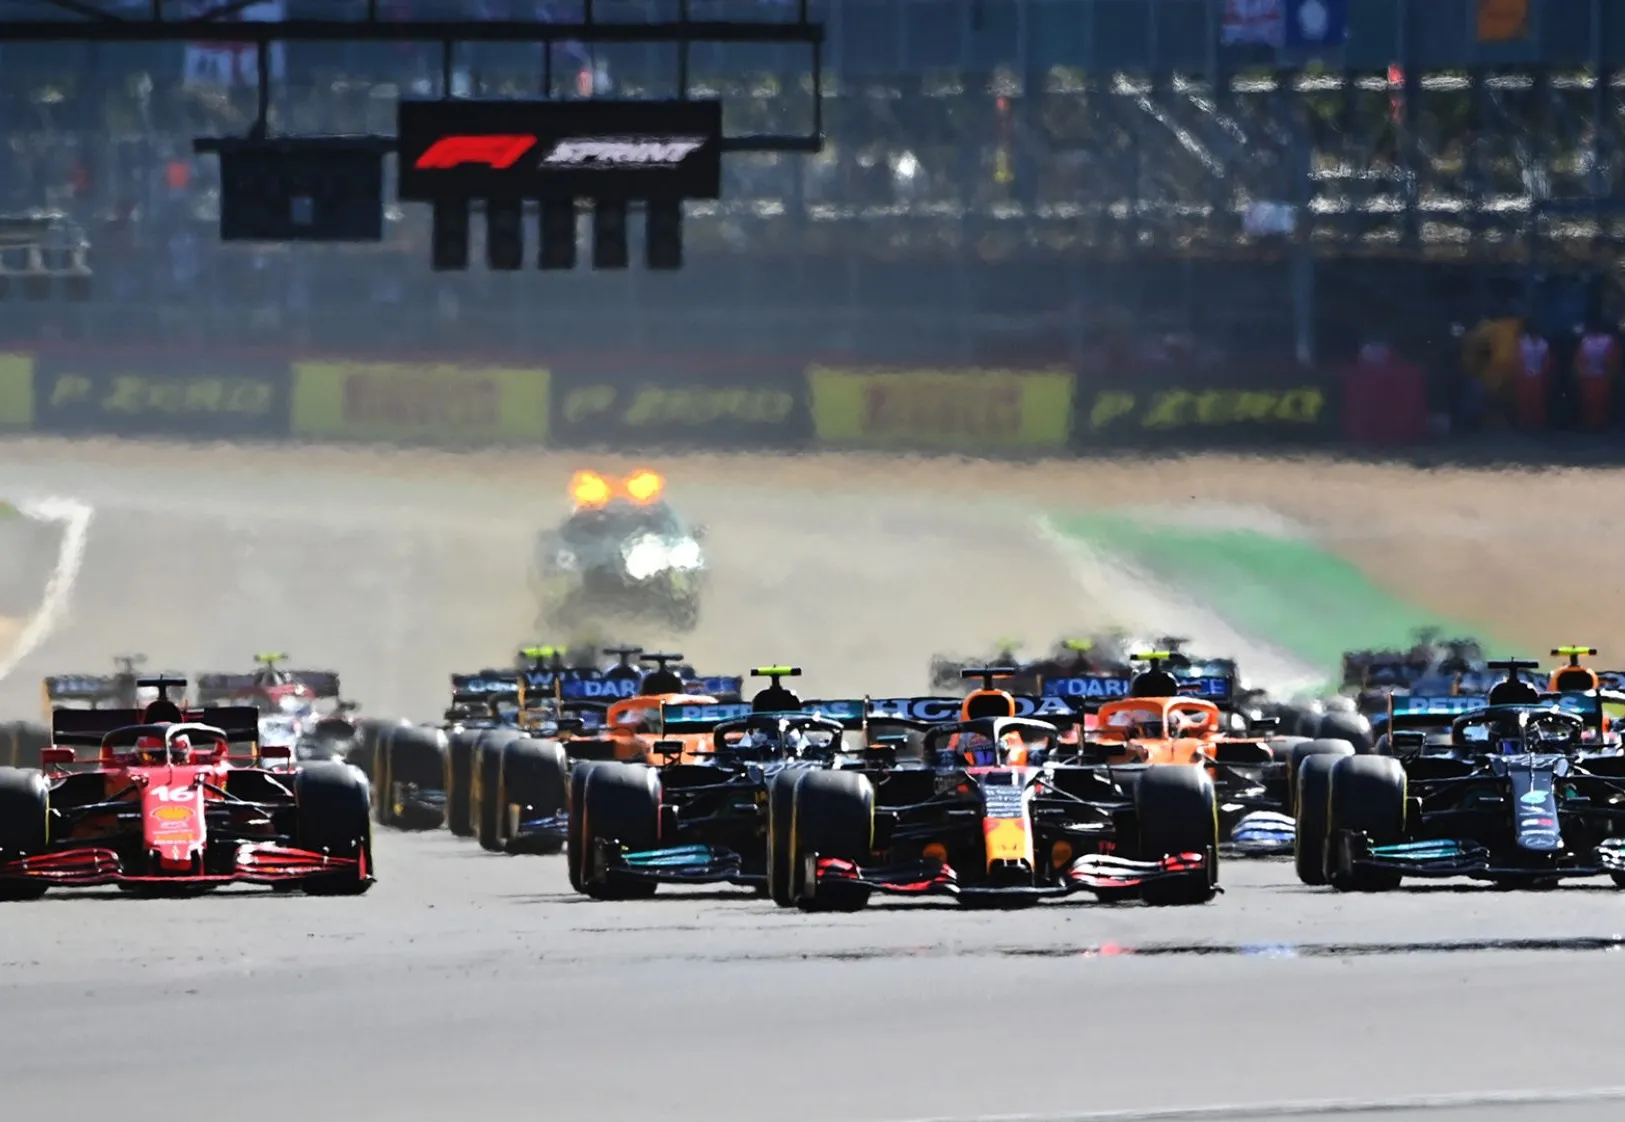 F1 AO VIVO: Treino Livre para o Grande Prêmio de São Paulo